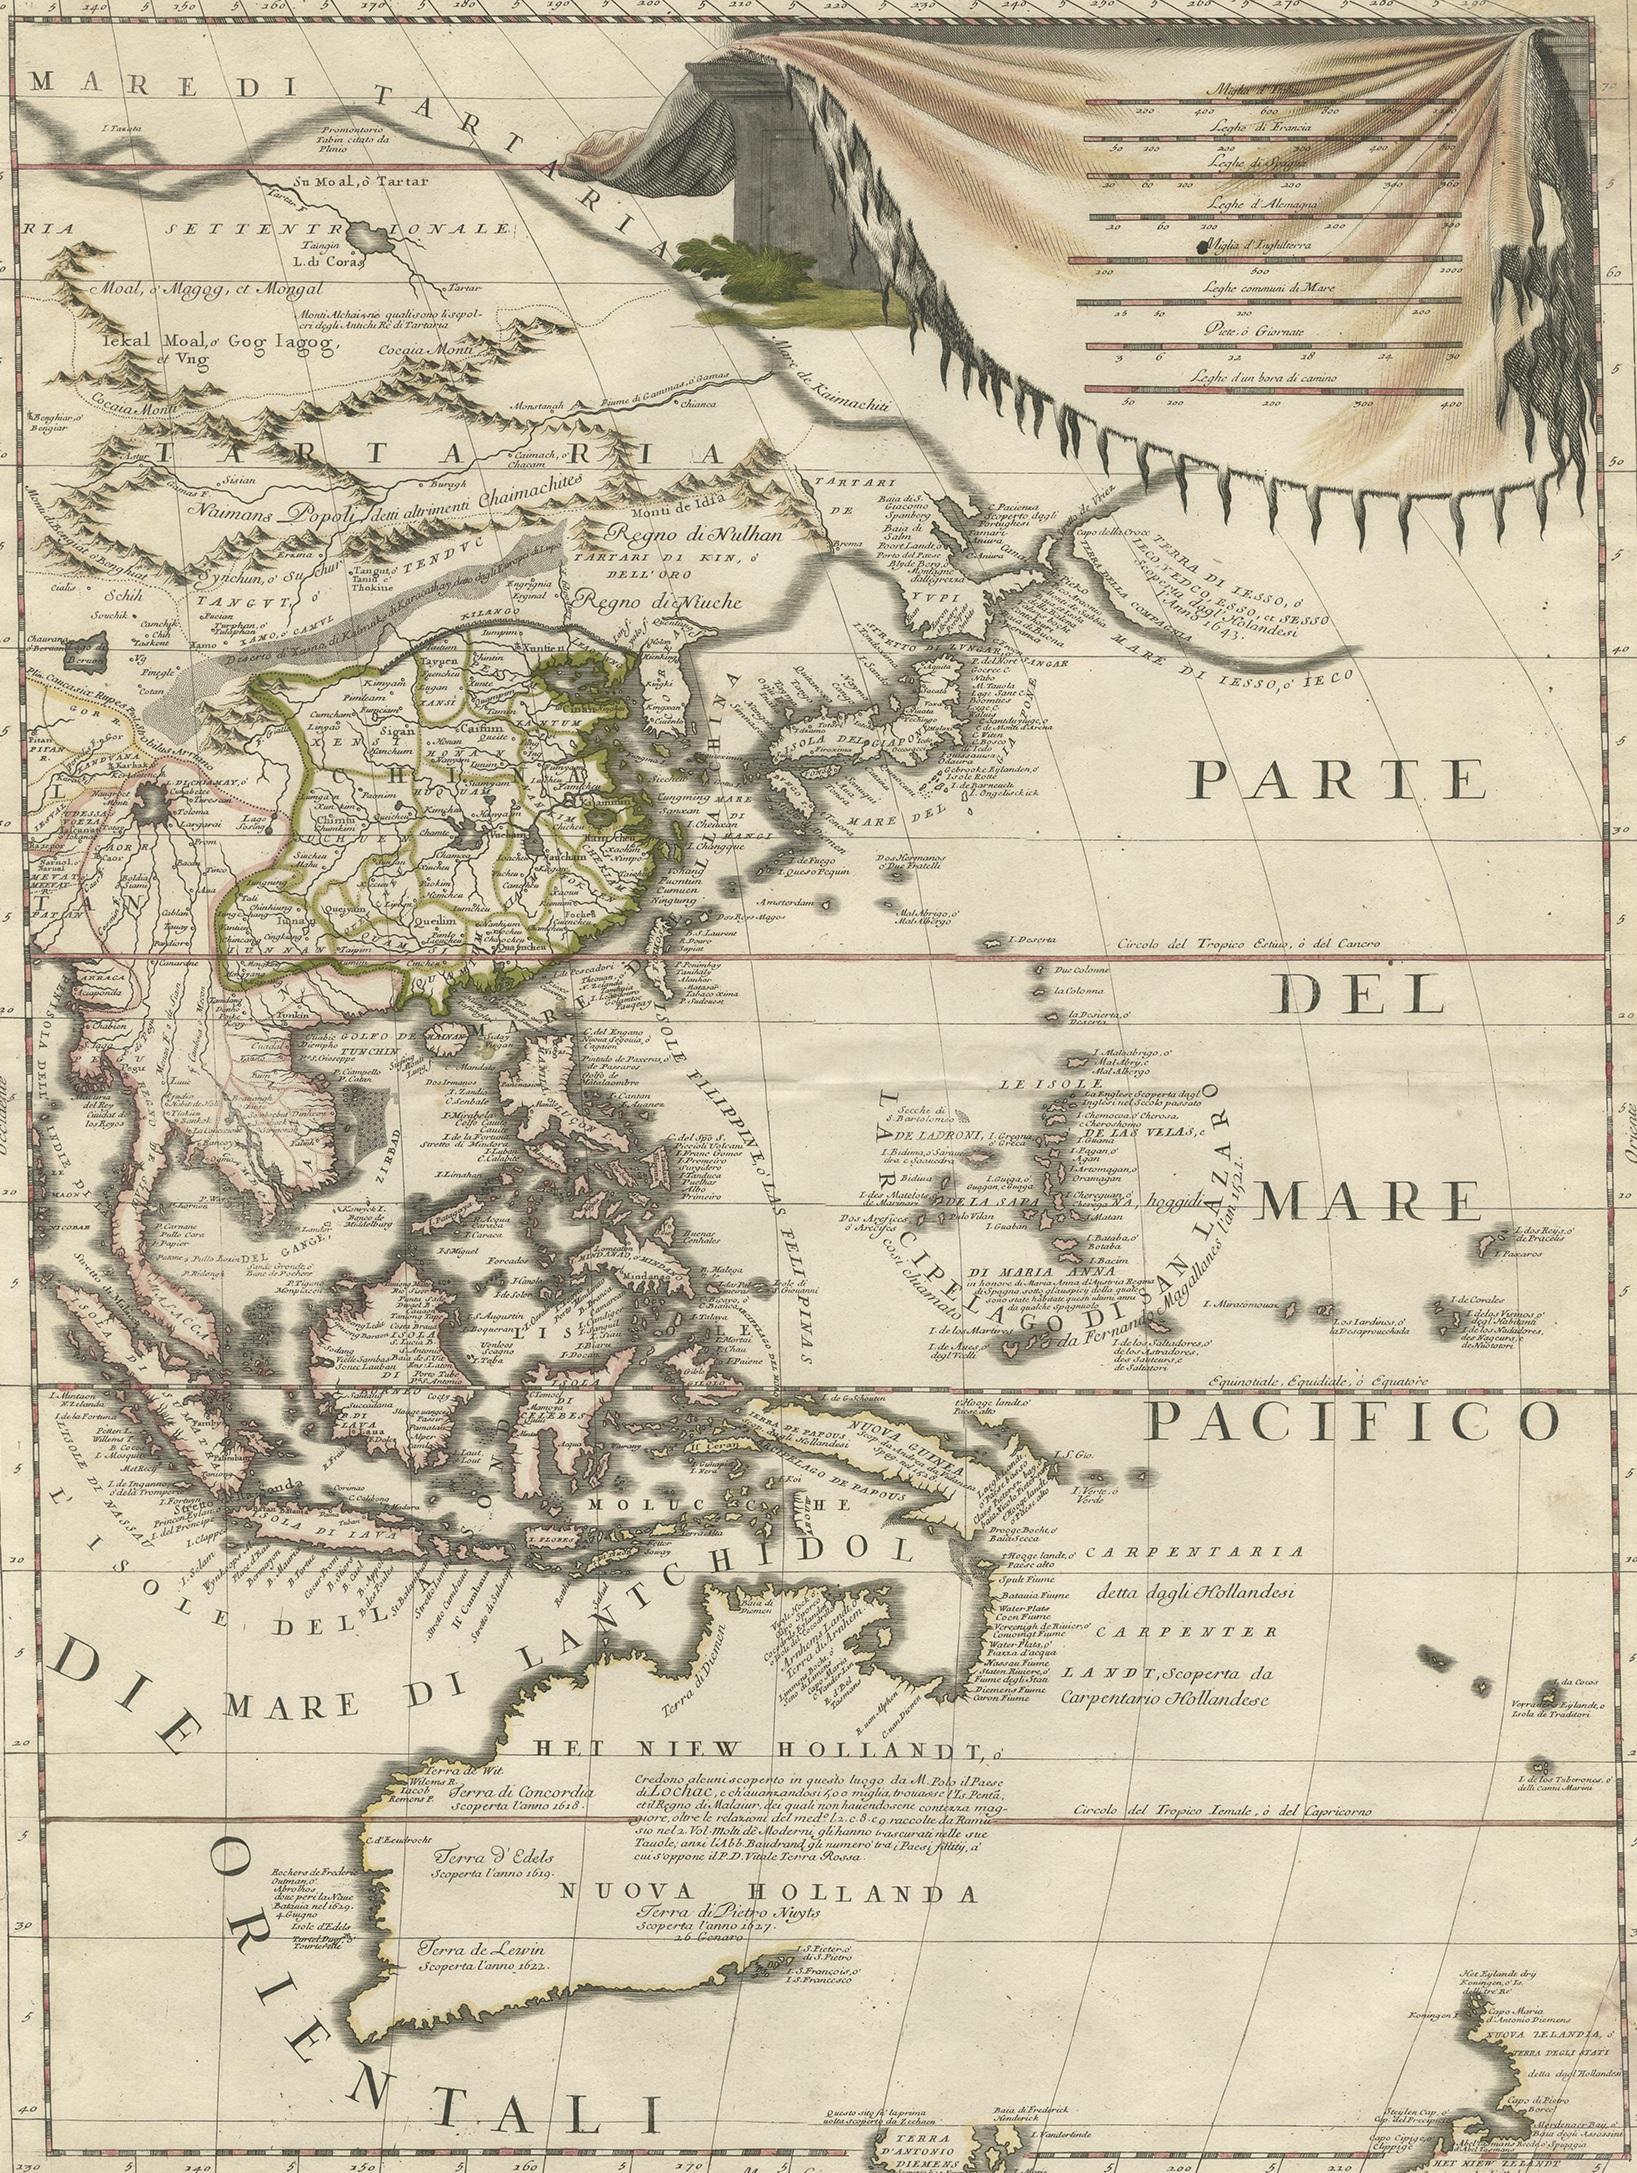 Carte ancienne de l'Asie de l'Est montrant la Nouvelle Hollande et des parties de la Terre de Van Diemens et de la Nouvelle Zélande. Cette carte est la partie droite d'une carte à deux feuilles, mais elle est complète en soi. Cette carte provient de